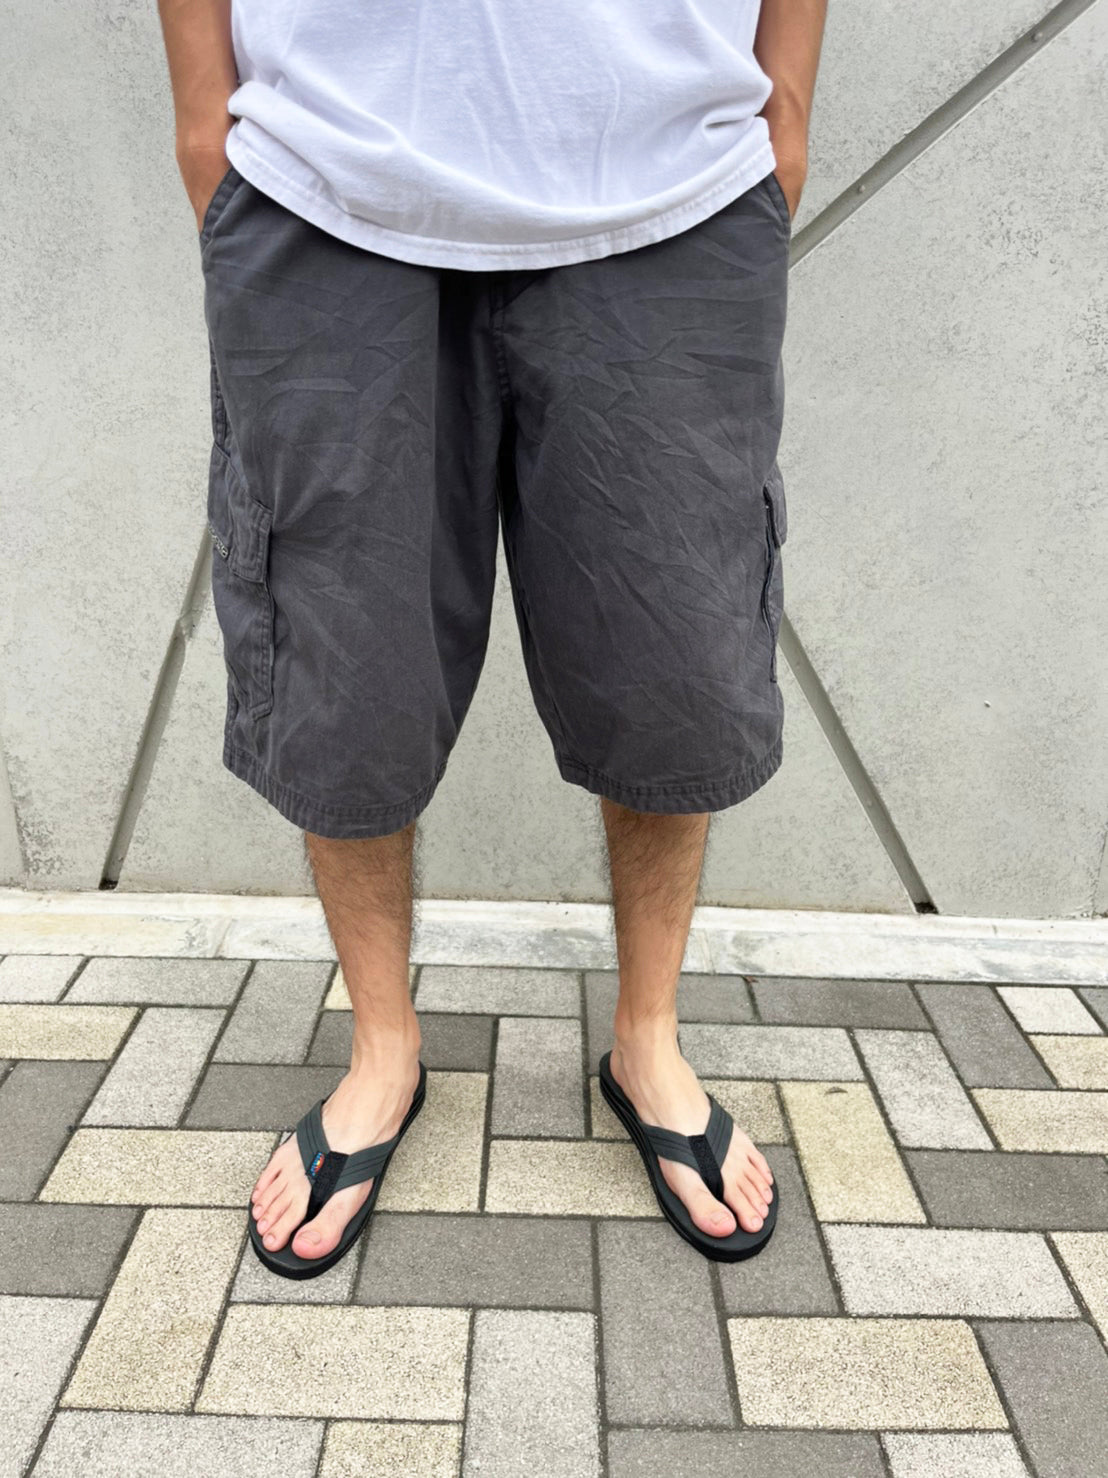 【Billabong】90's billabong vintage surf Short pants  無地 ショートパンツ カーゴショーツ (size 33)